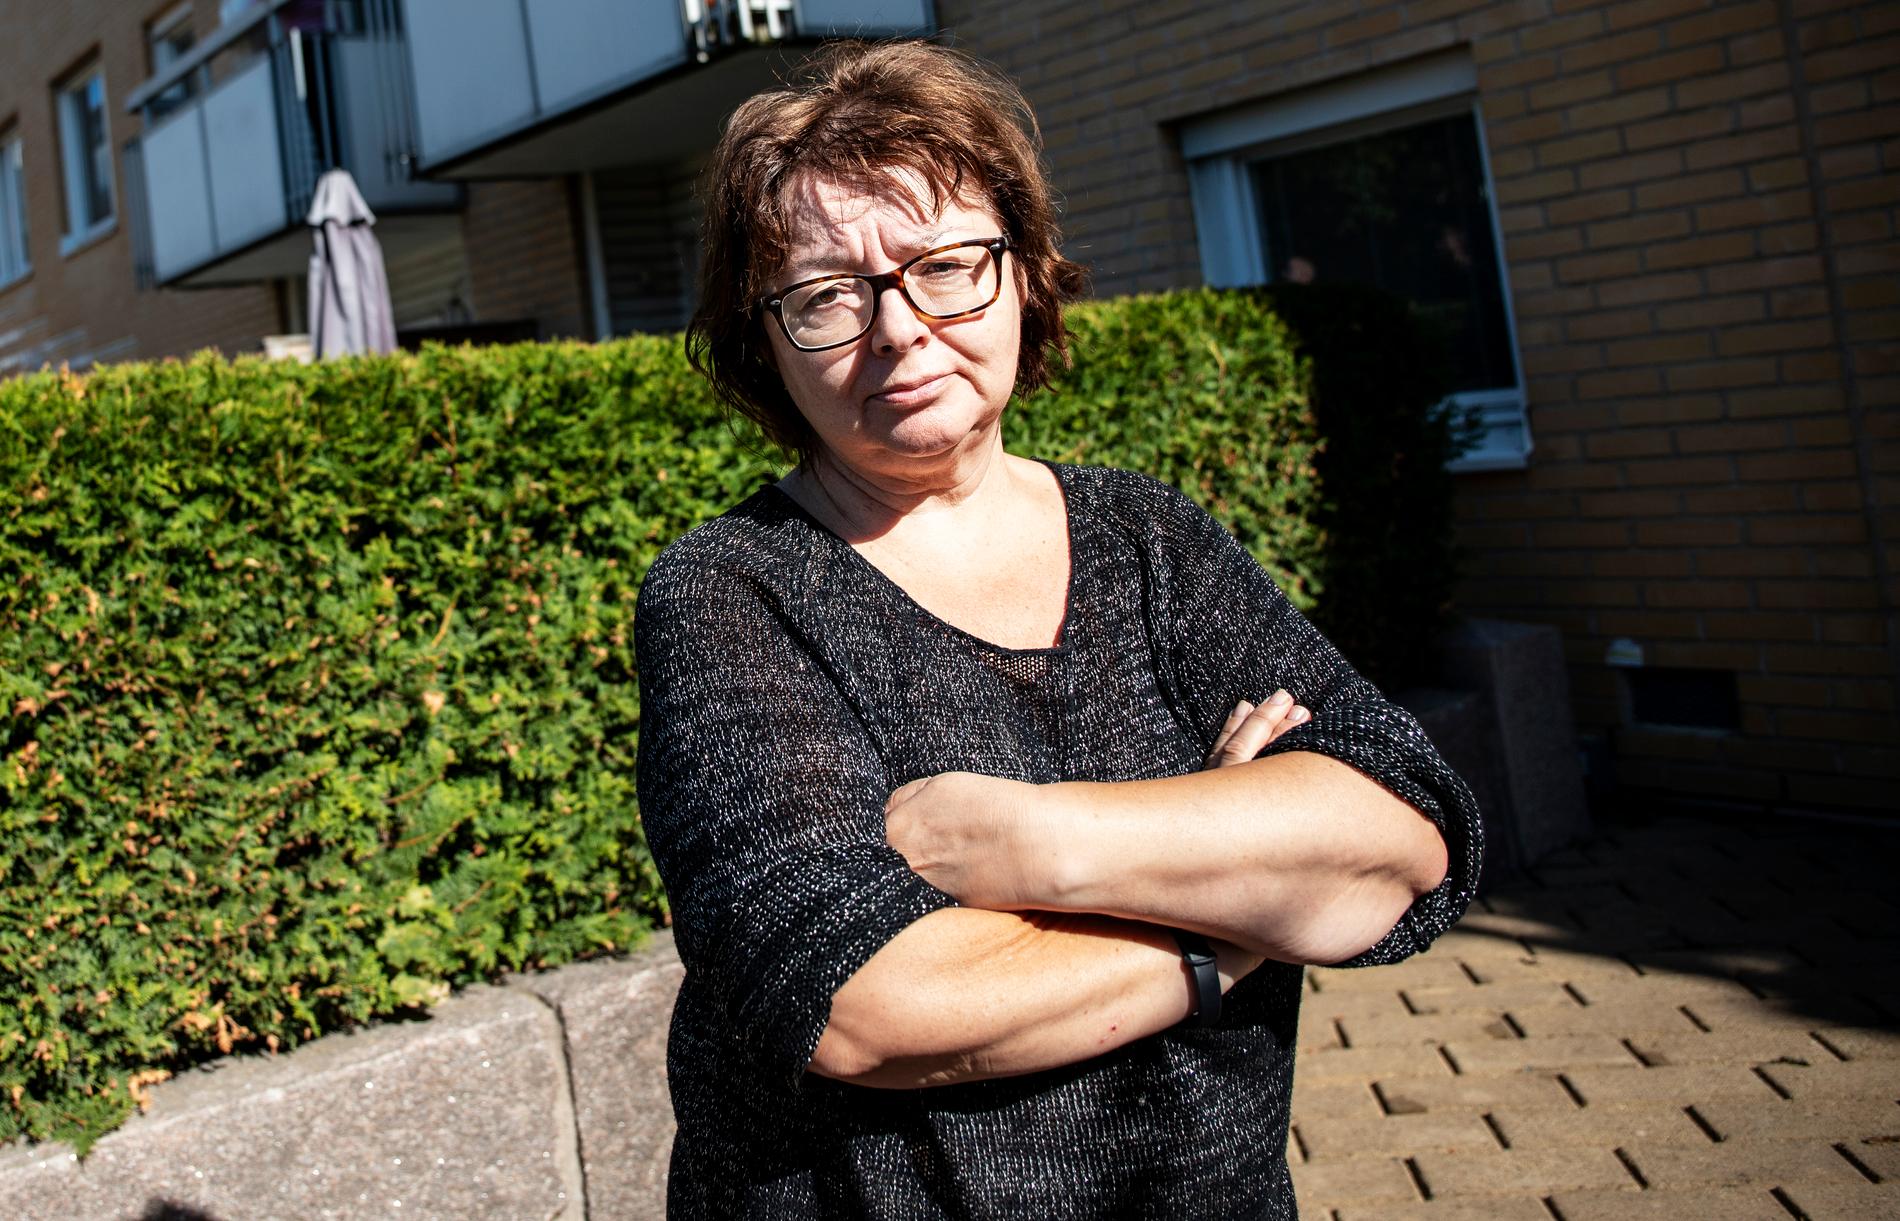 Pia Margaretha Andersson bor i området där en kvinna och två små barn mördades: ”Det är en chock, man tror inte att det är sant”